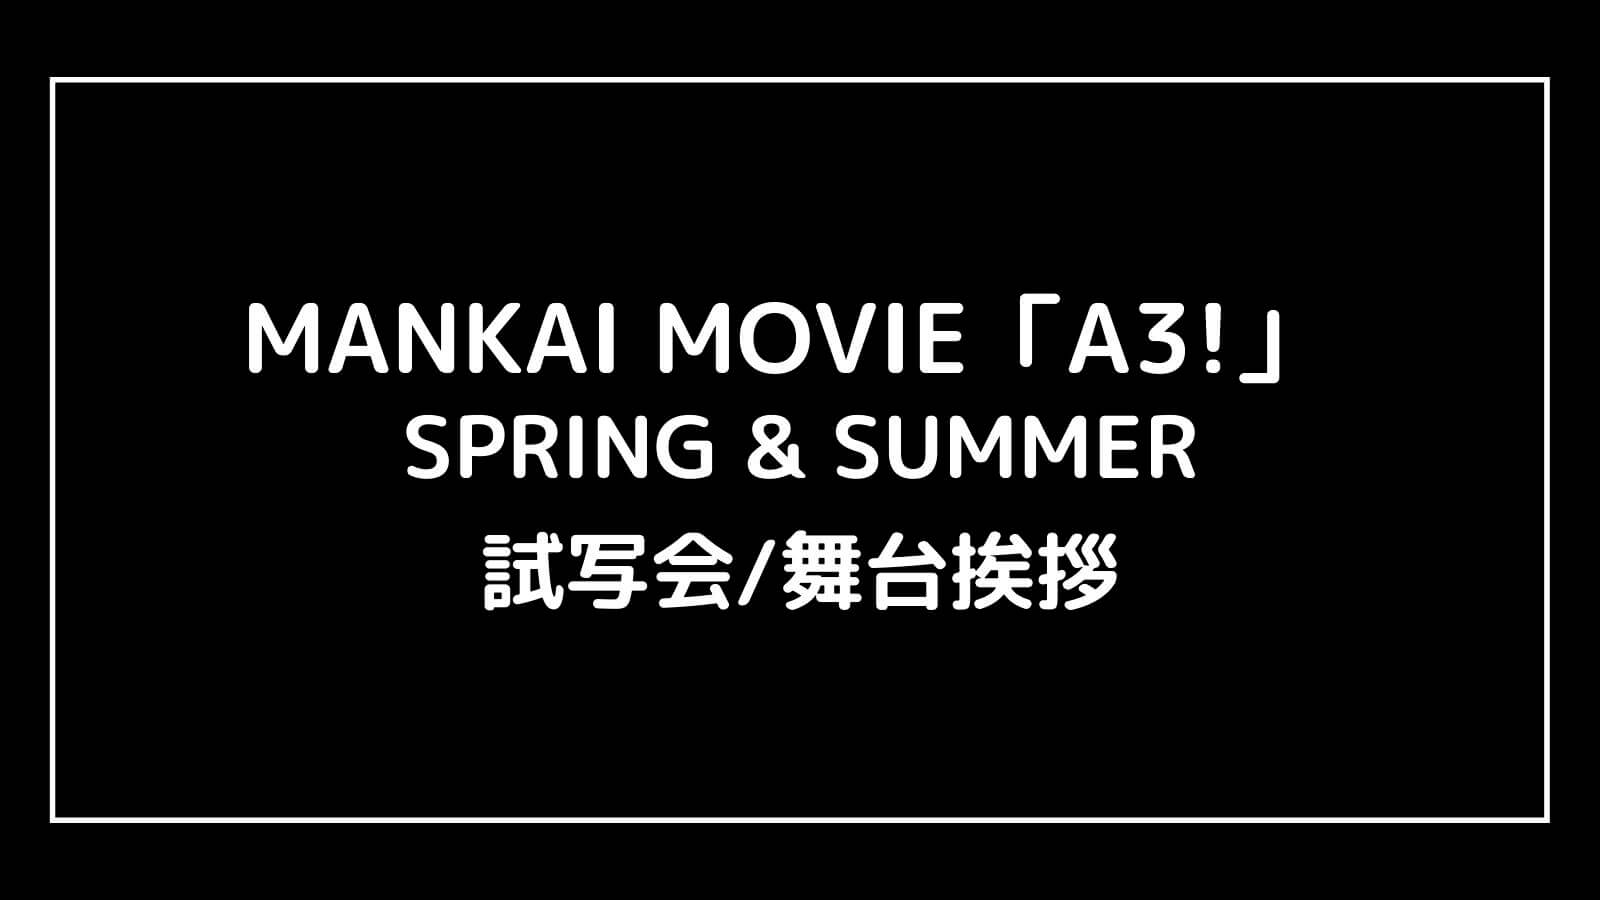 映画『A3! SPRING&SUMMER(エーステ)』の試写会と舞台挨拶ライブビューイング情報